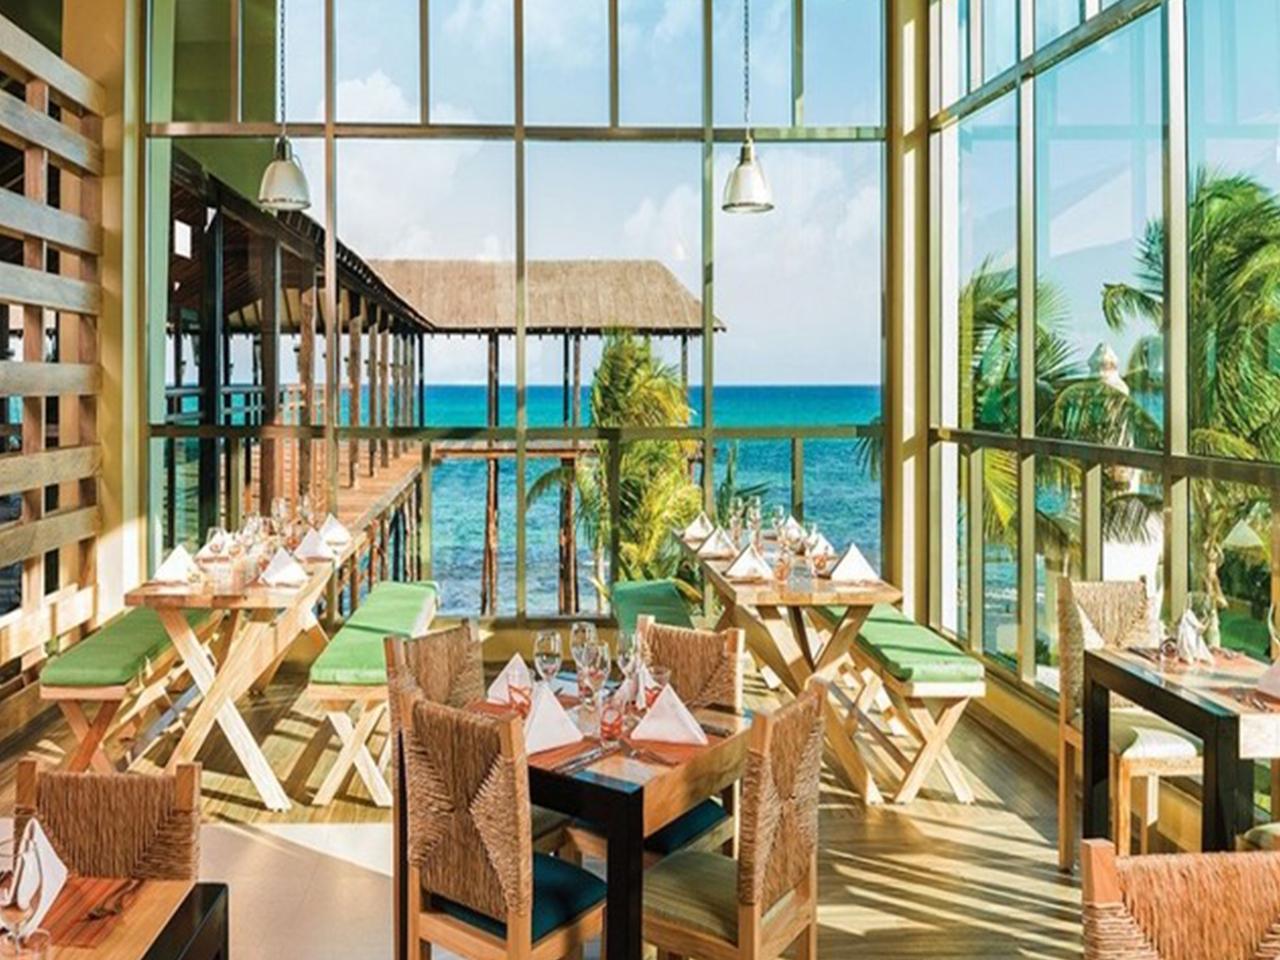 Bodas en la playa - restaurante vista al mar